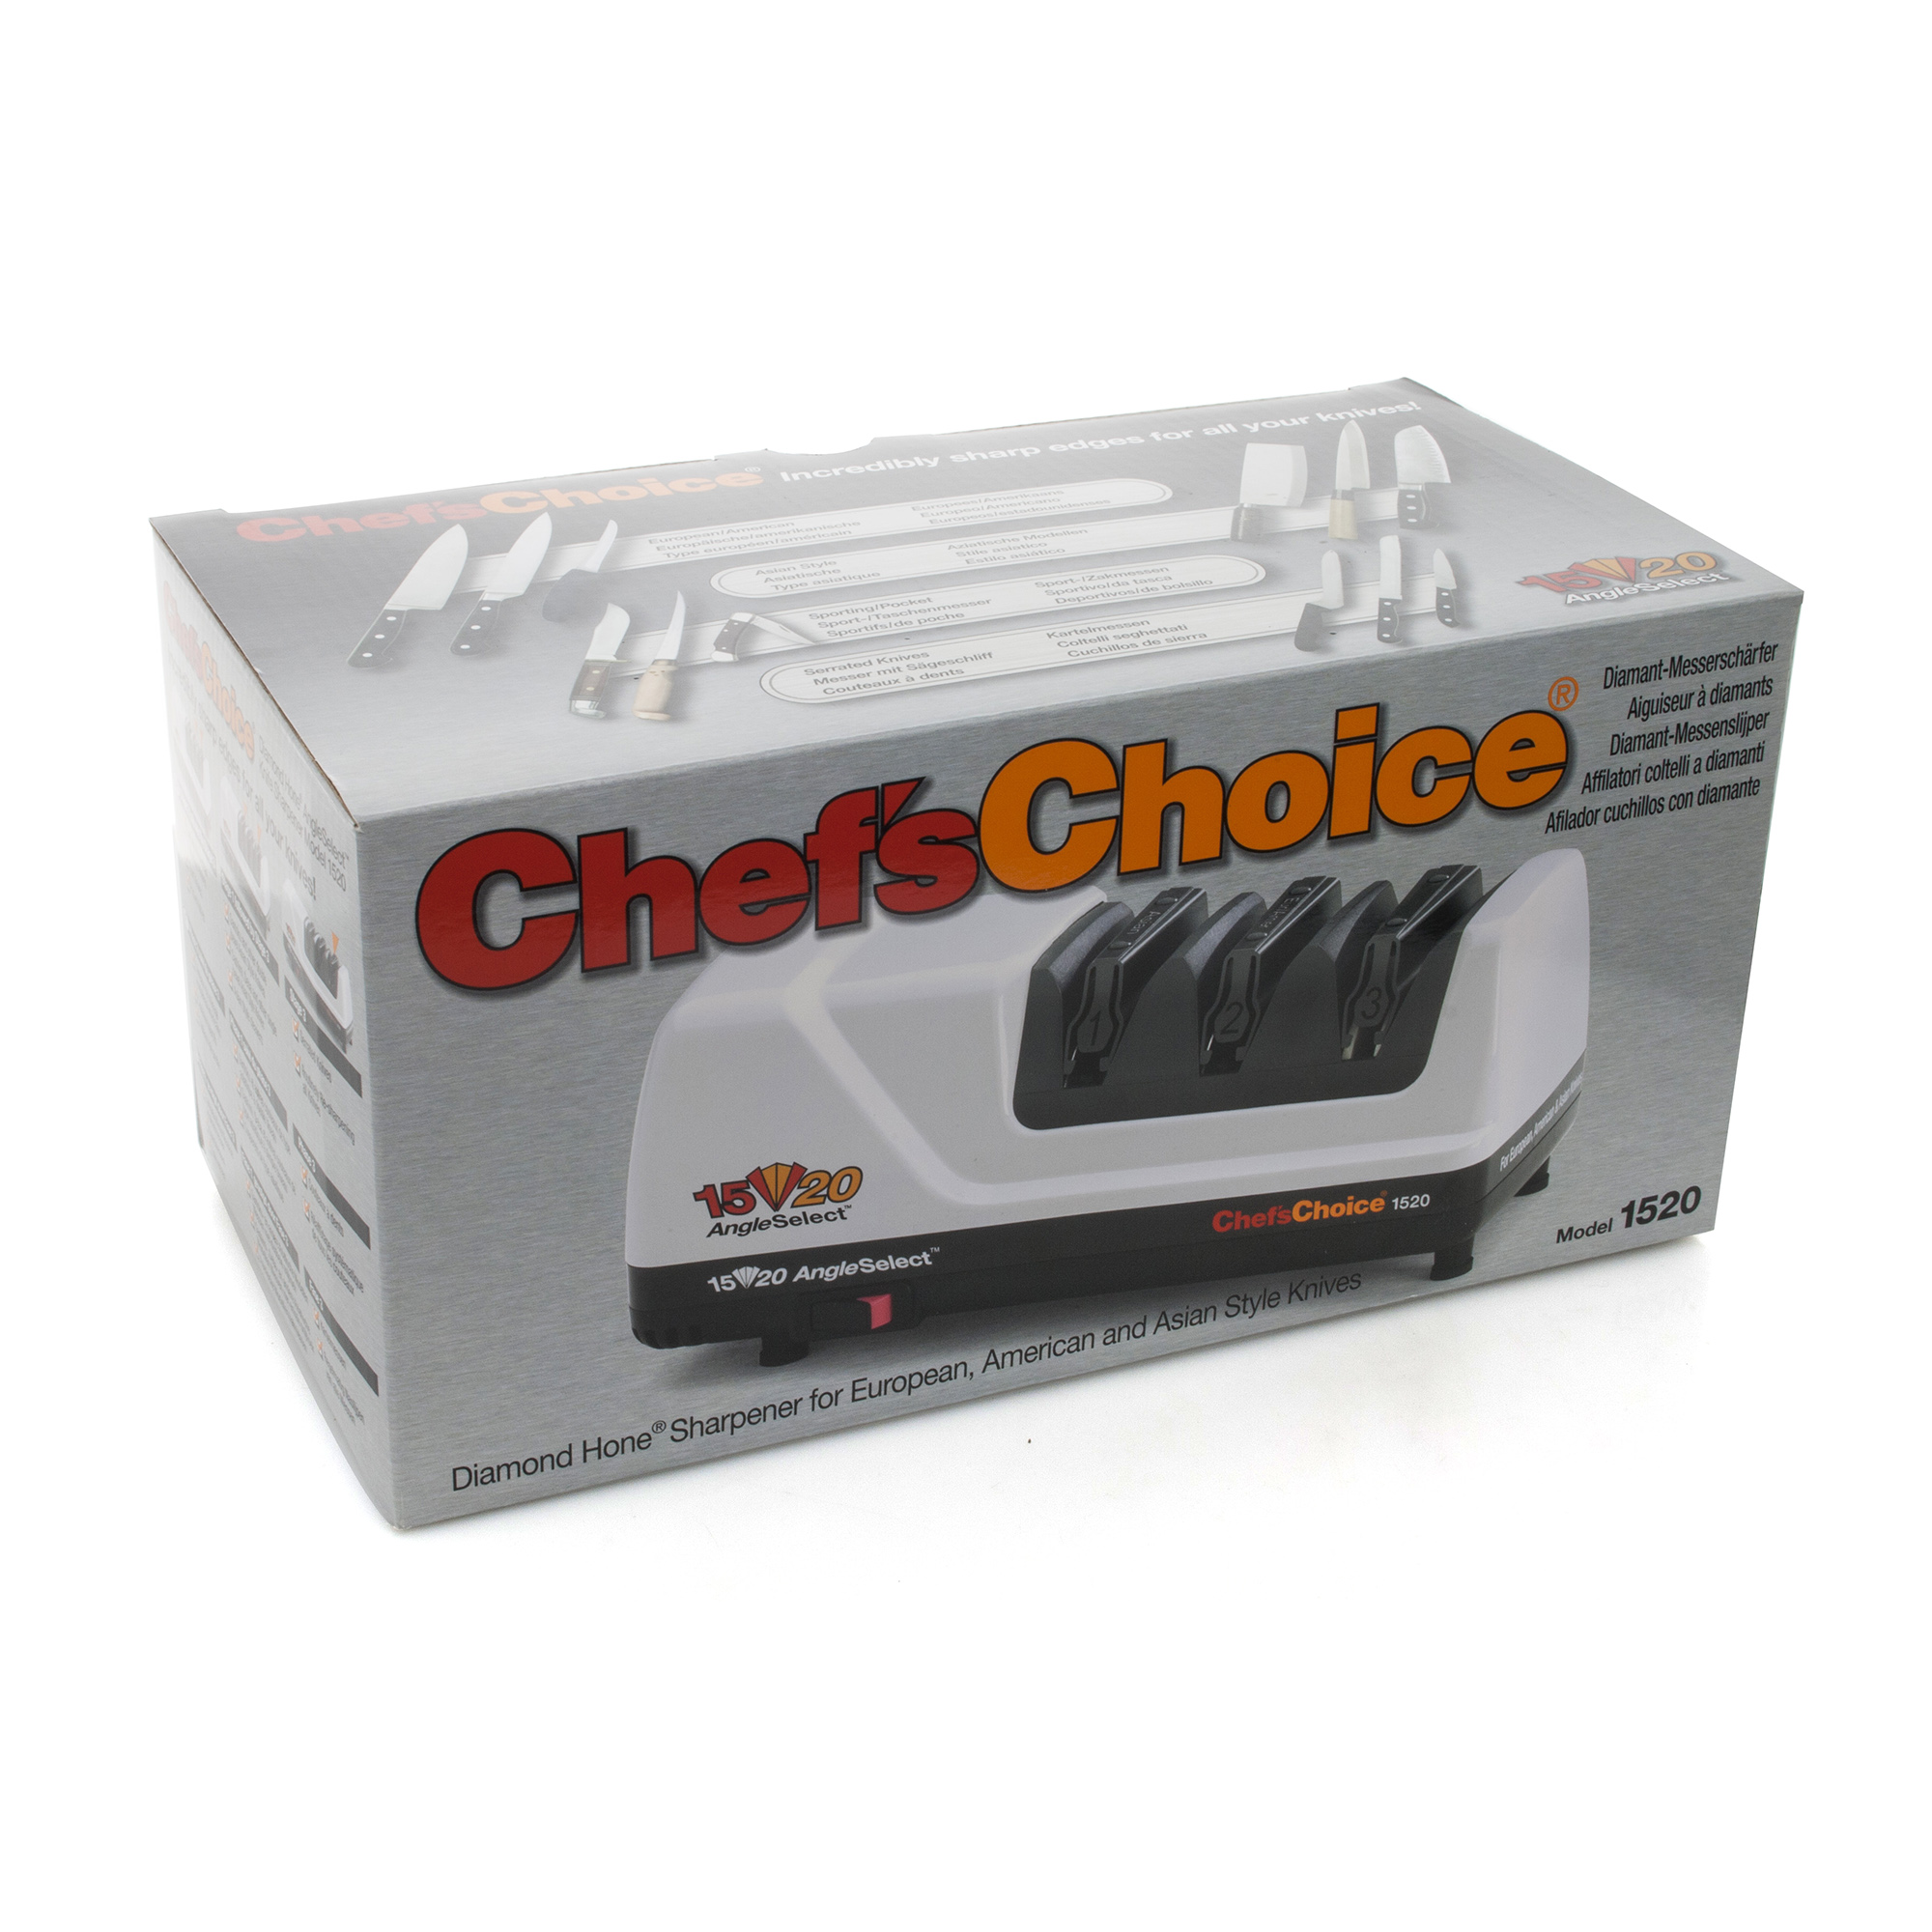 Точилка электрическая для заточки ножей, белая, серия Knife sharpeners,Chef'sChoice, США